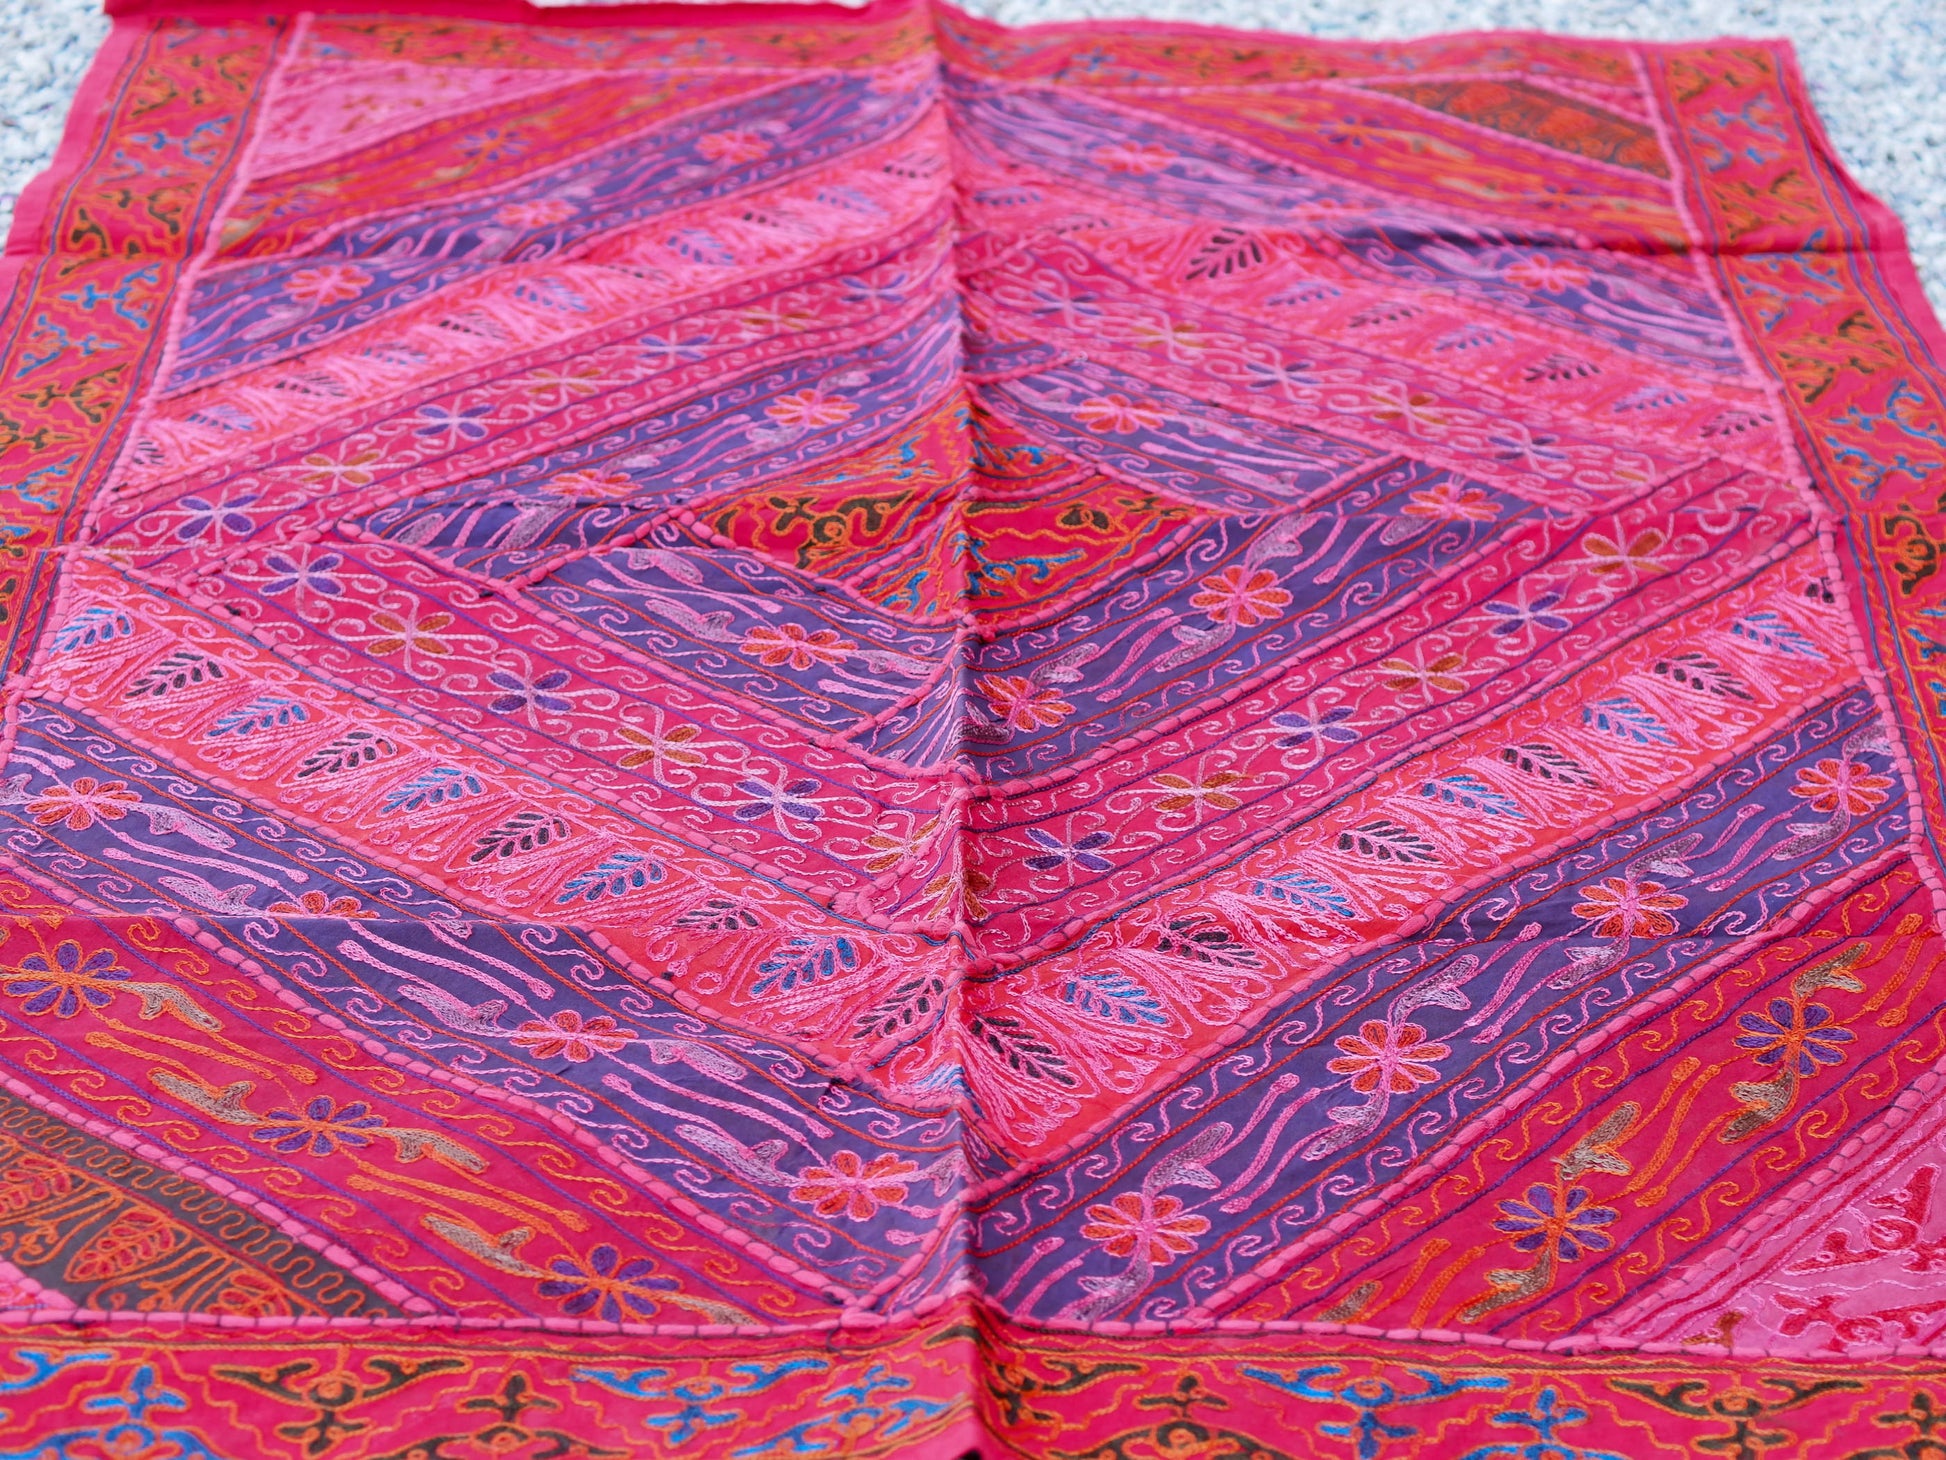 Arazzo in cotone, lavorato artigianalmente a mano con tecnica patchwork. Tipici dell'india del nord, in Rajasthan l'arazzo in casa è simbolo di fortuna e prosperità. Ideale come tessuto da appendere a parete ma si puo' impiegare anche come tappeto.   Dimensioni 100x150cm